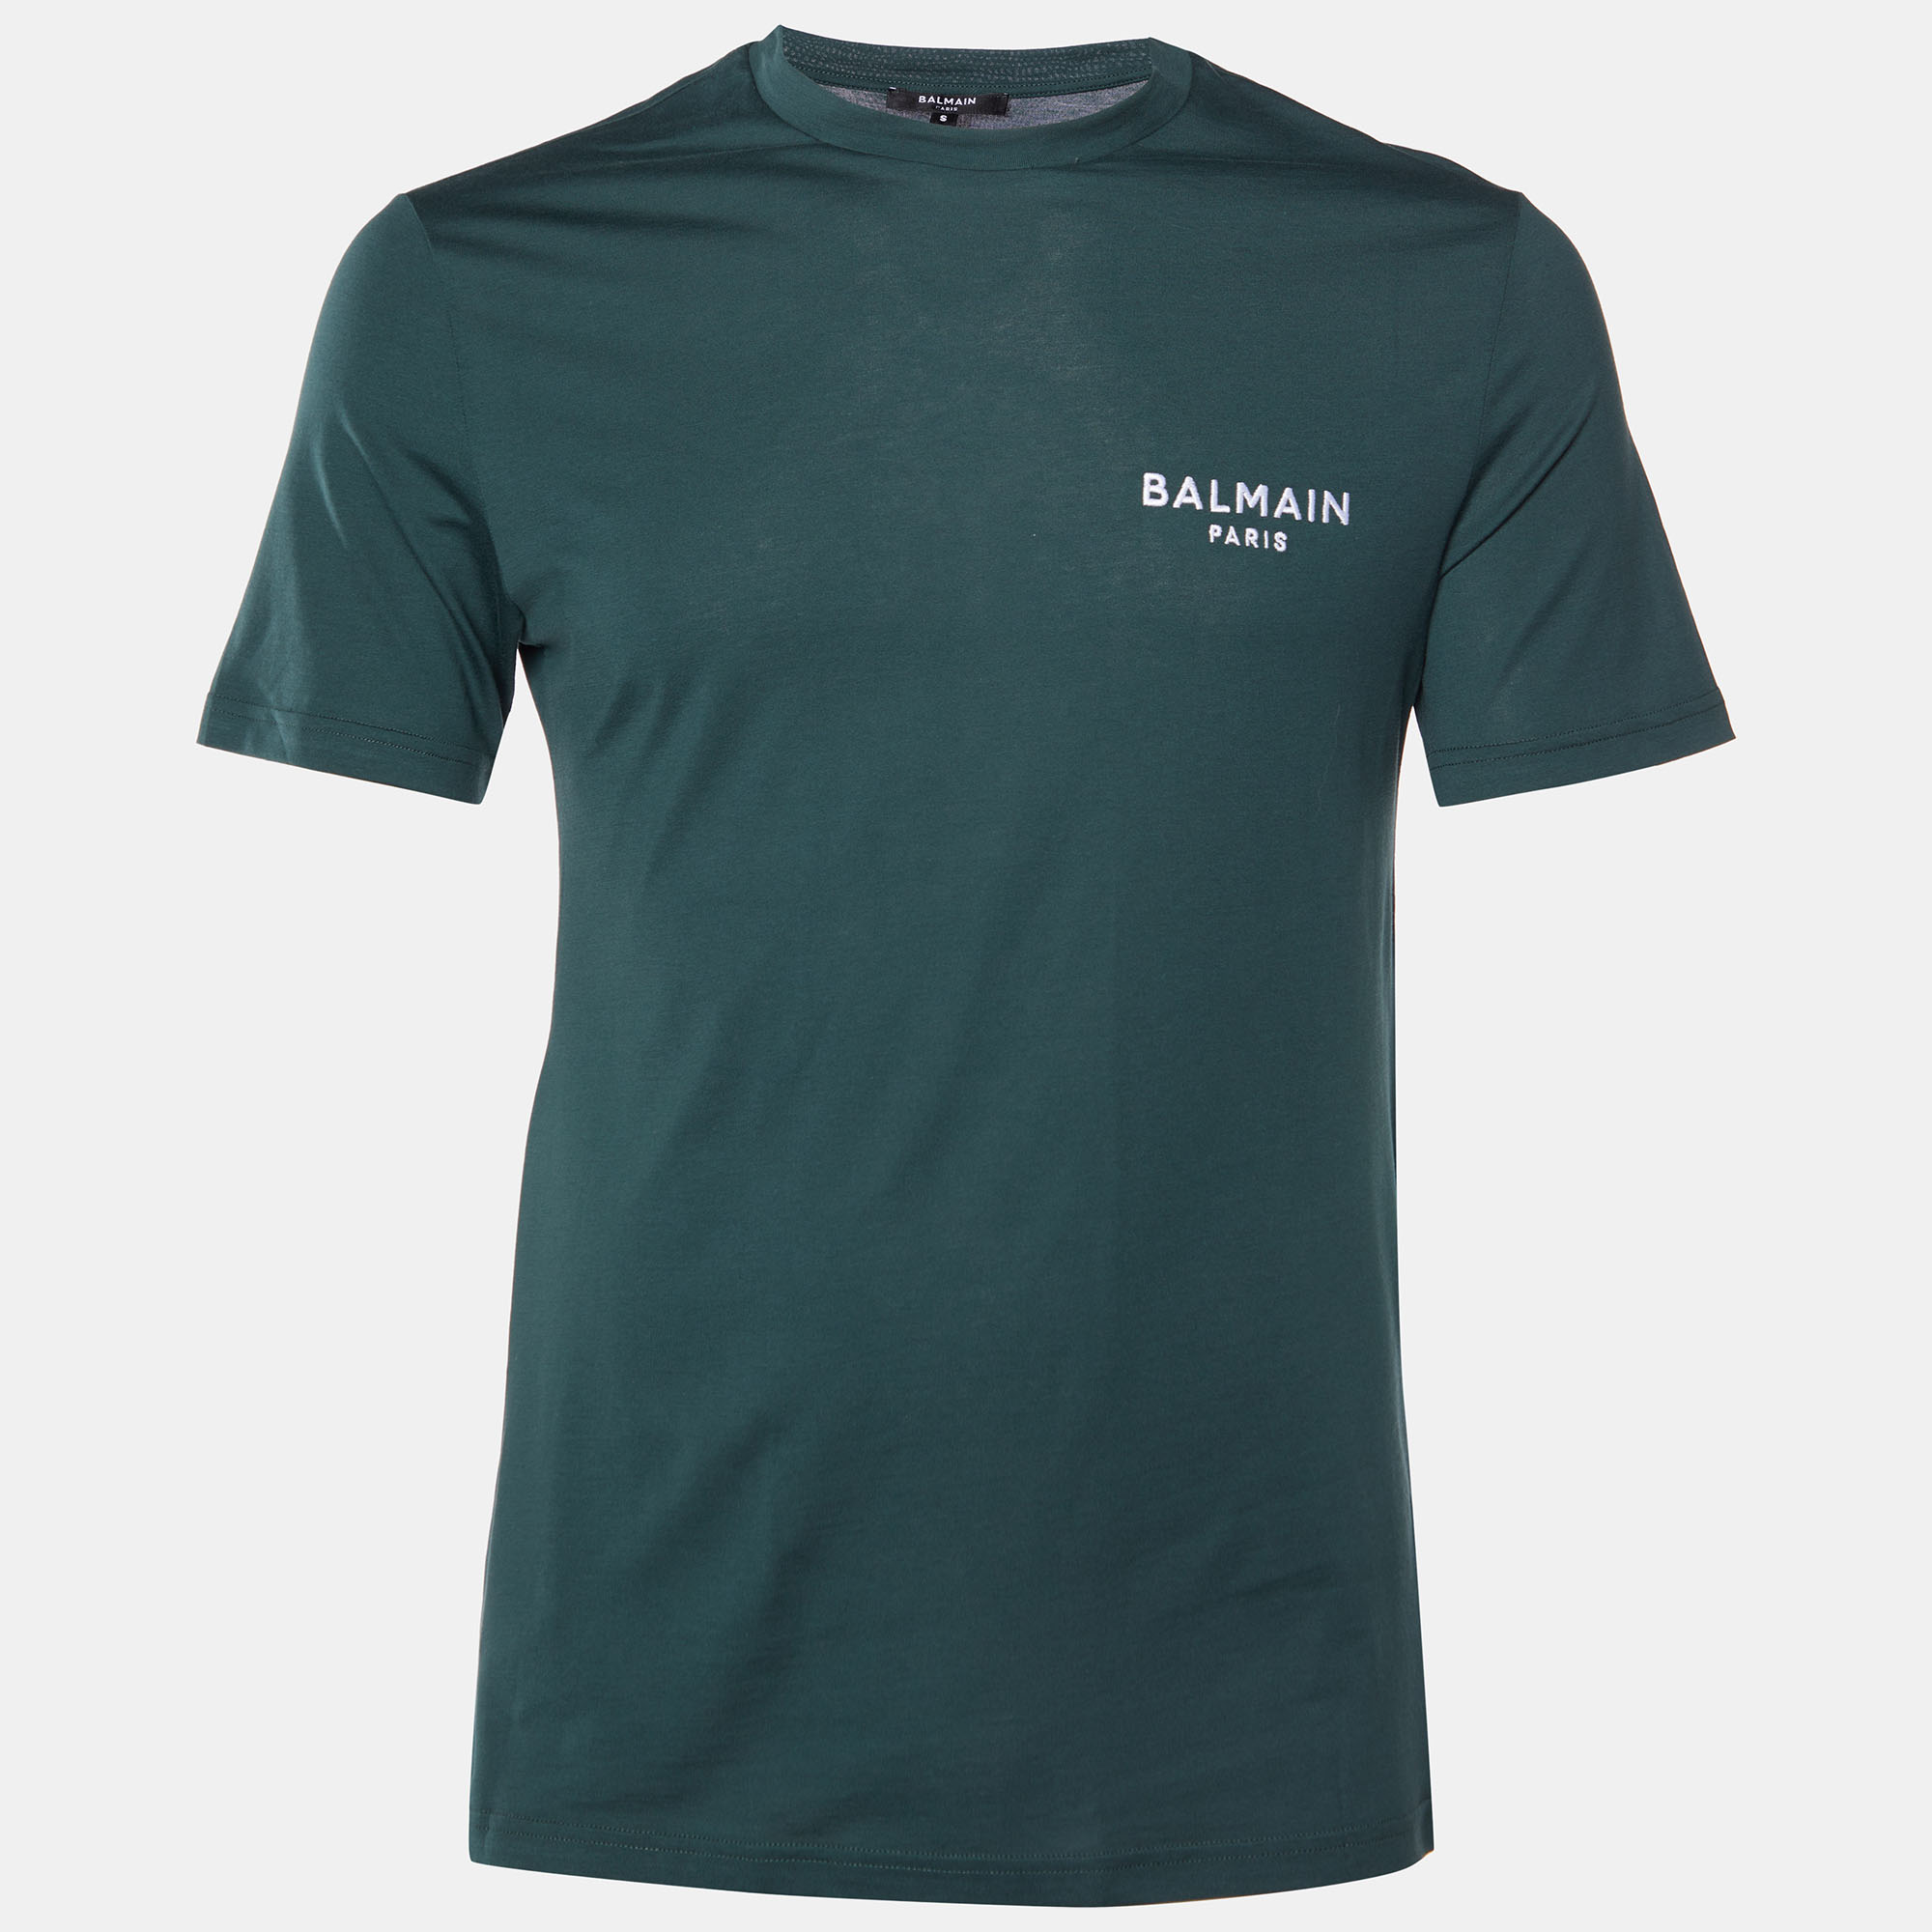 Balmain deep green cotton jersey logo embroidered crew neck t-shirt s